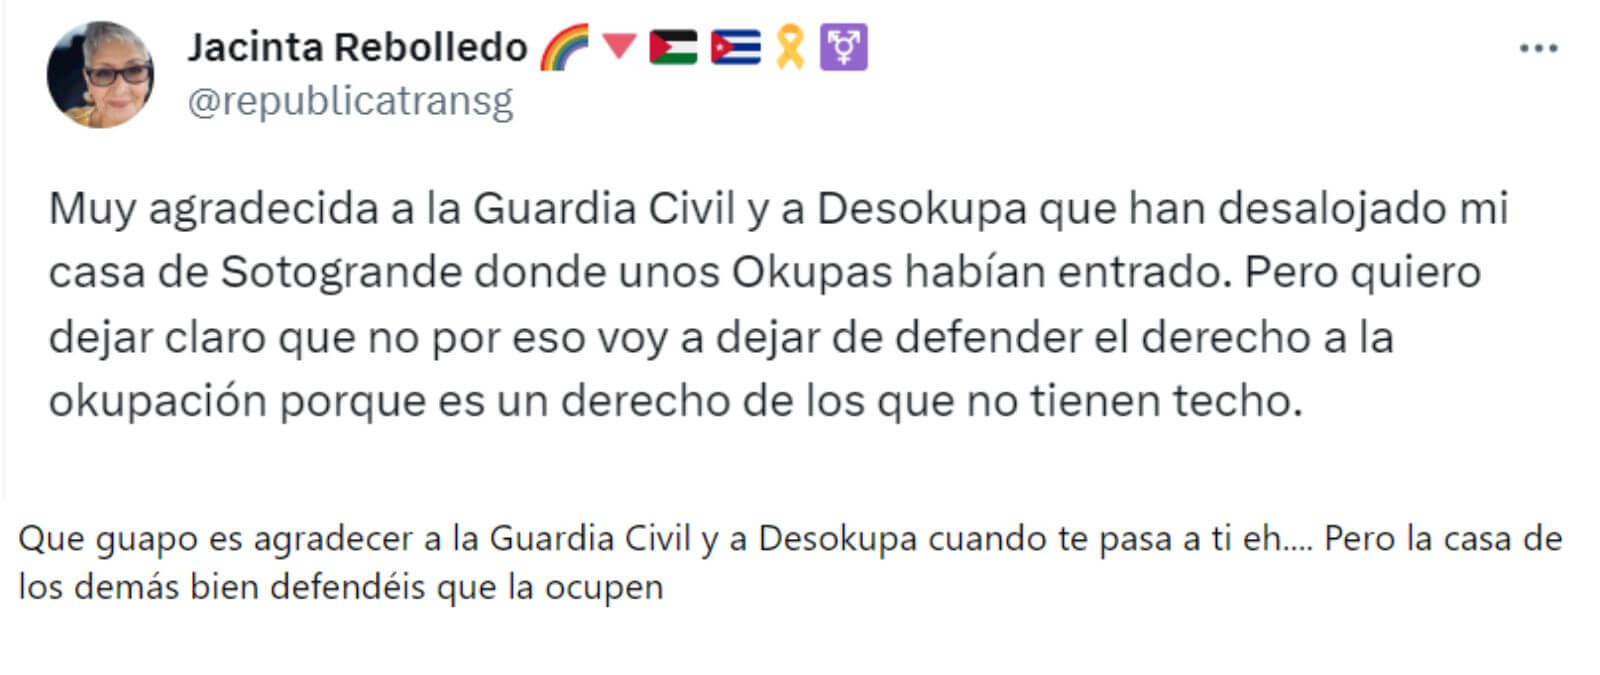 Cuidado con este tuit de Jacinta Rebolledo que dice estar "muy agradecida a la Guardia Civil y a Desokupa", pero que "la okupación es un derecho": es una cuenta trol